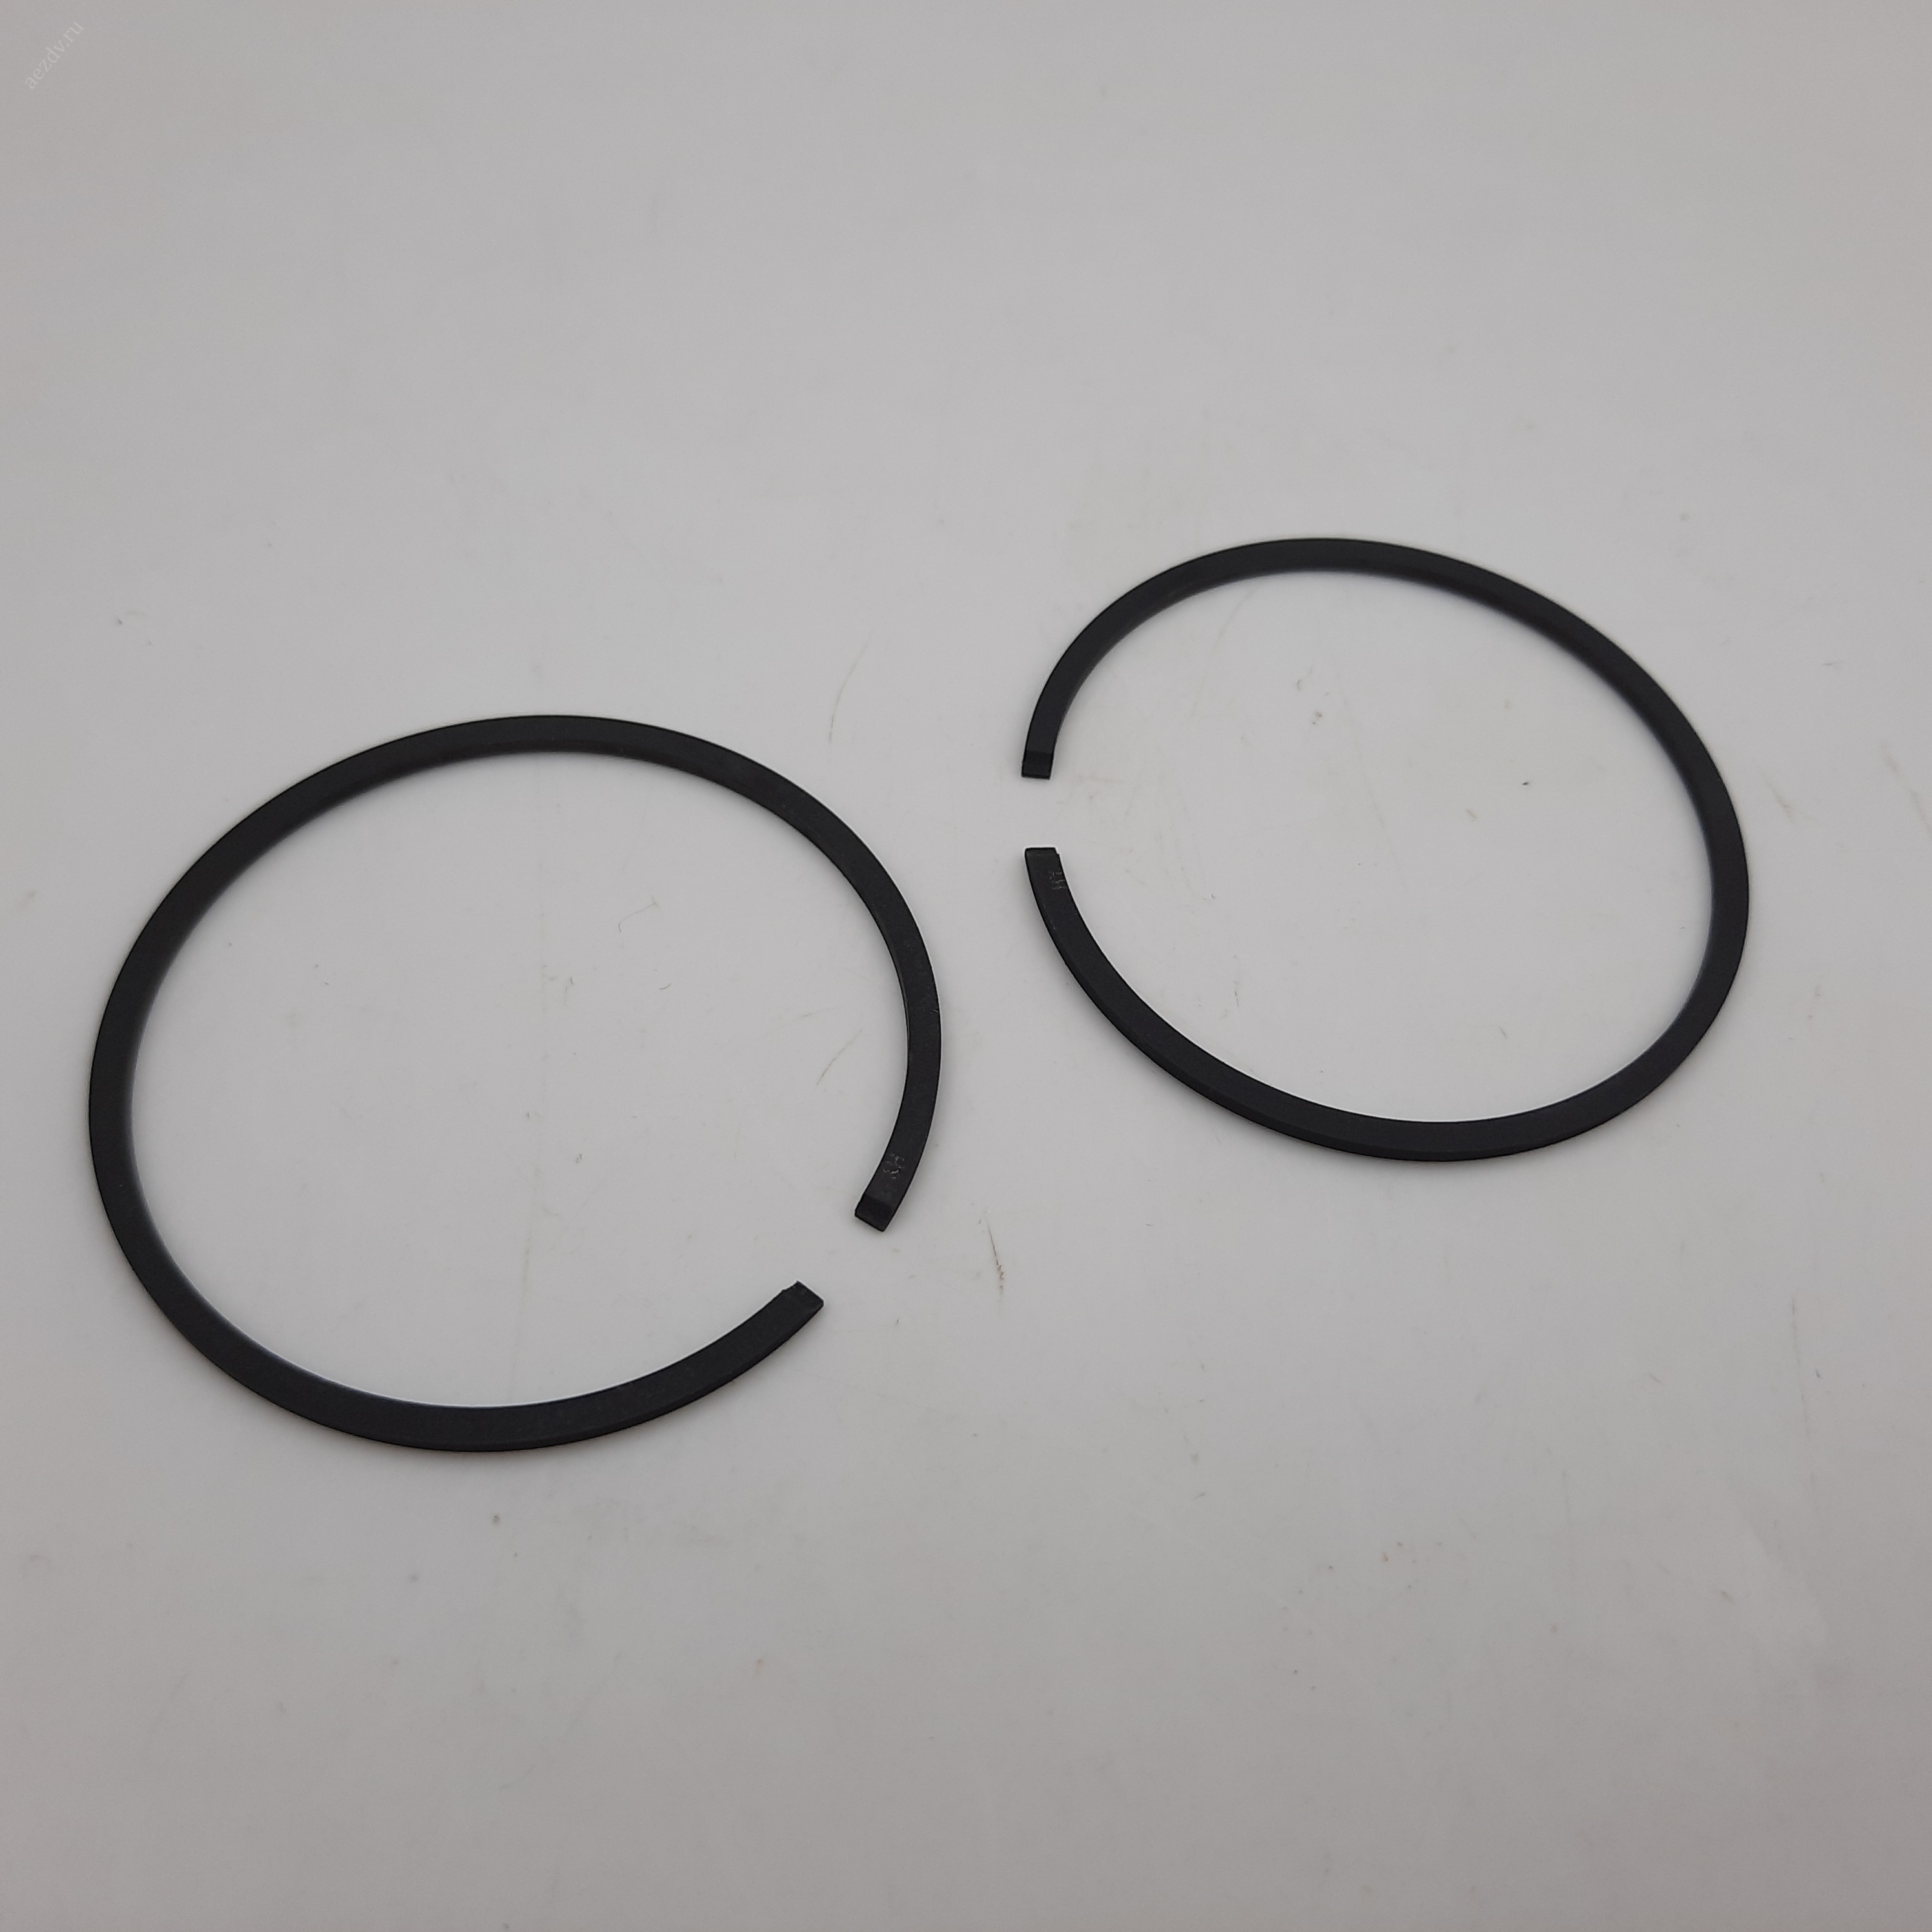 Кольцо поршневое (компрессионное) для бензореза ШТИЛЬ TS400, d-49 мм, комплект 2 шт (аналог)